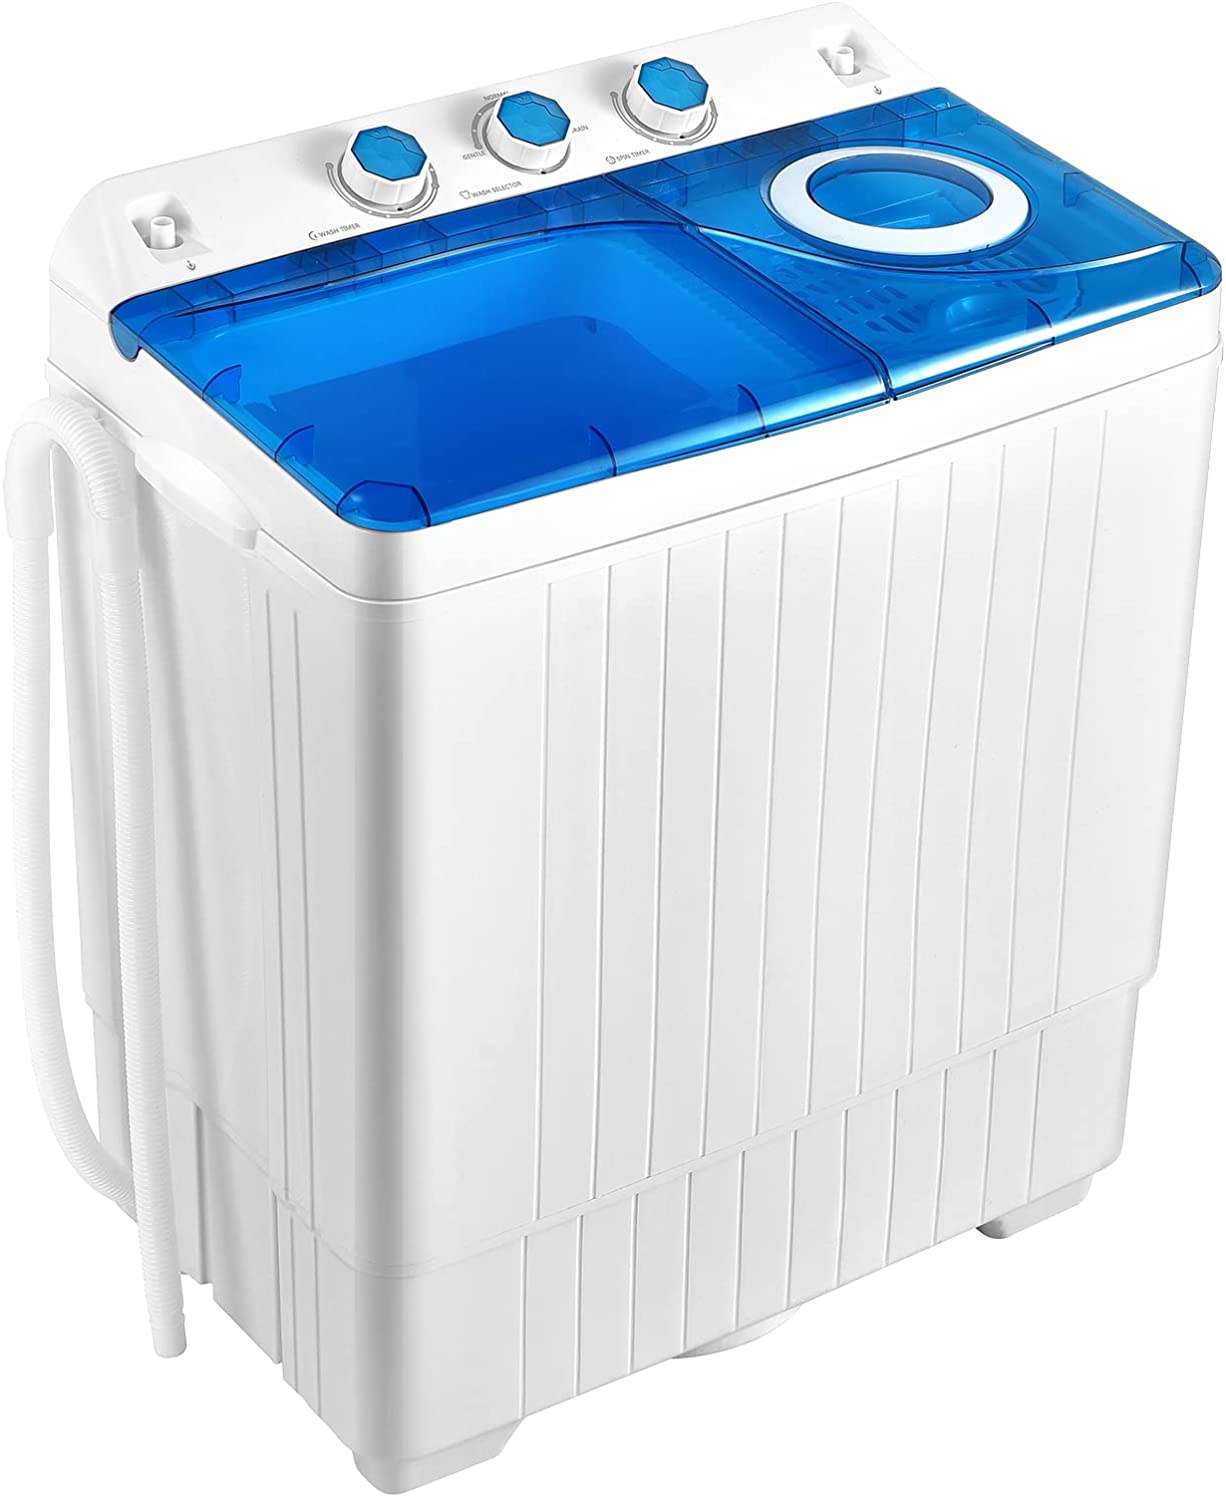  COSTWAY Mini lavadora portátil con secadora de centrifugado,  capacidad de lavado de 5.5 libras, máquinas eléctricas compactas, diseño  duradero, ahorro de energía, controlador giratorio, lavadora de :  Electrodomésticos